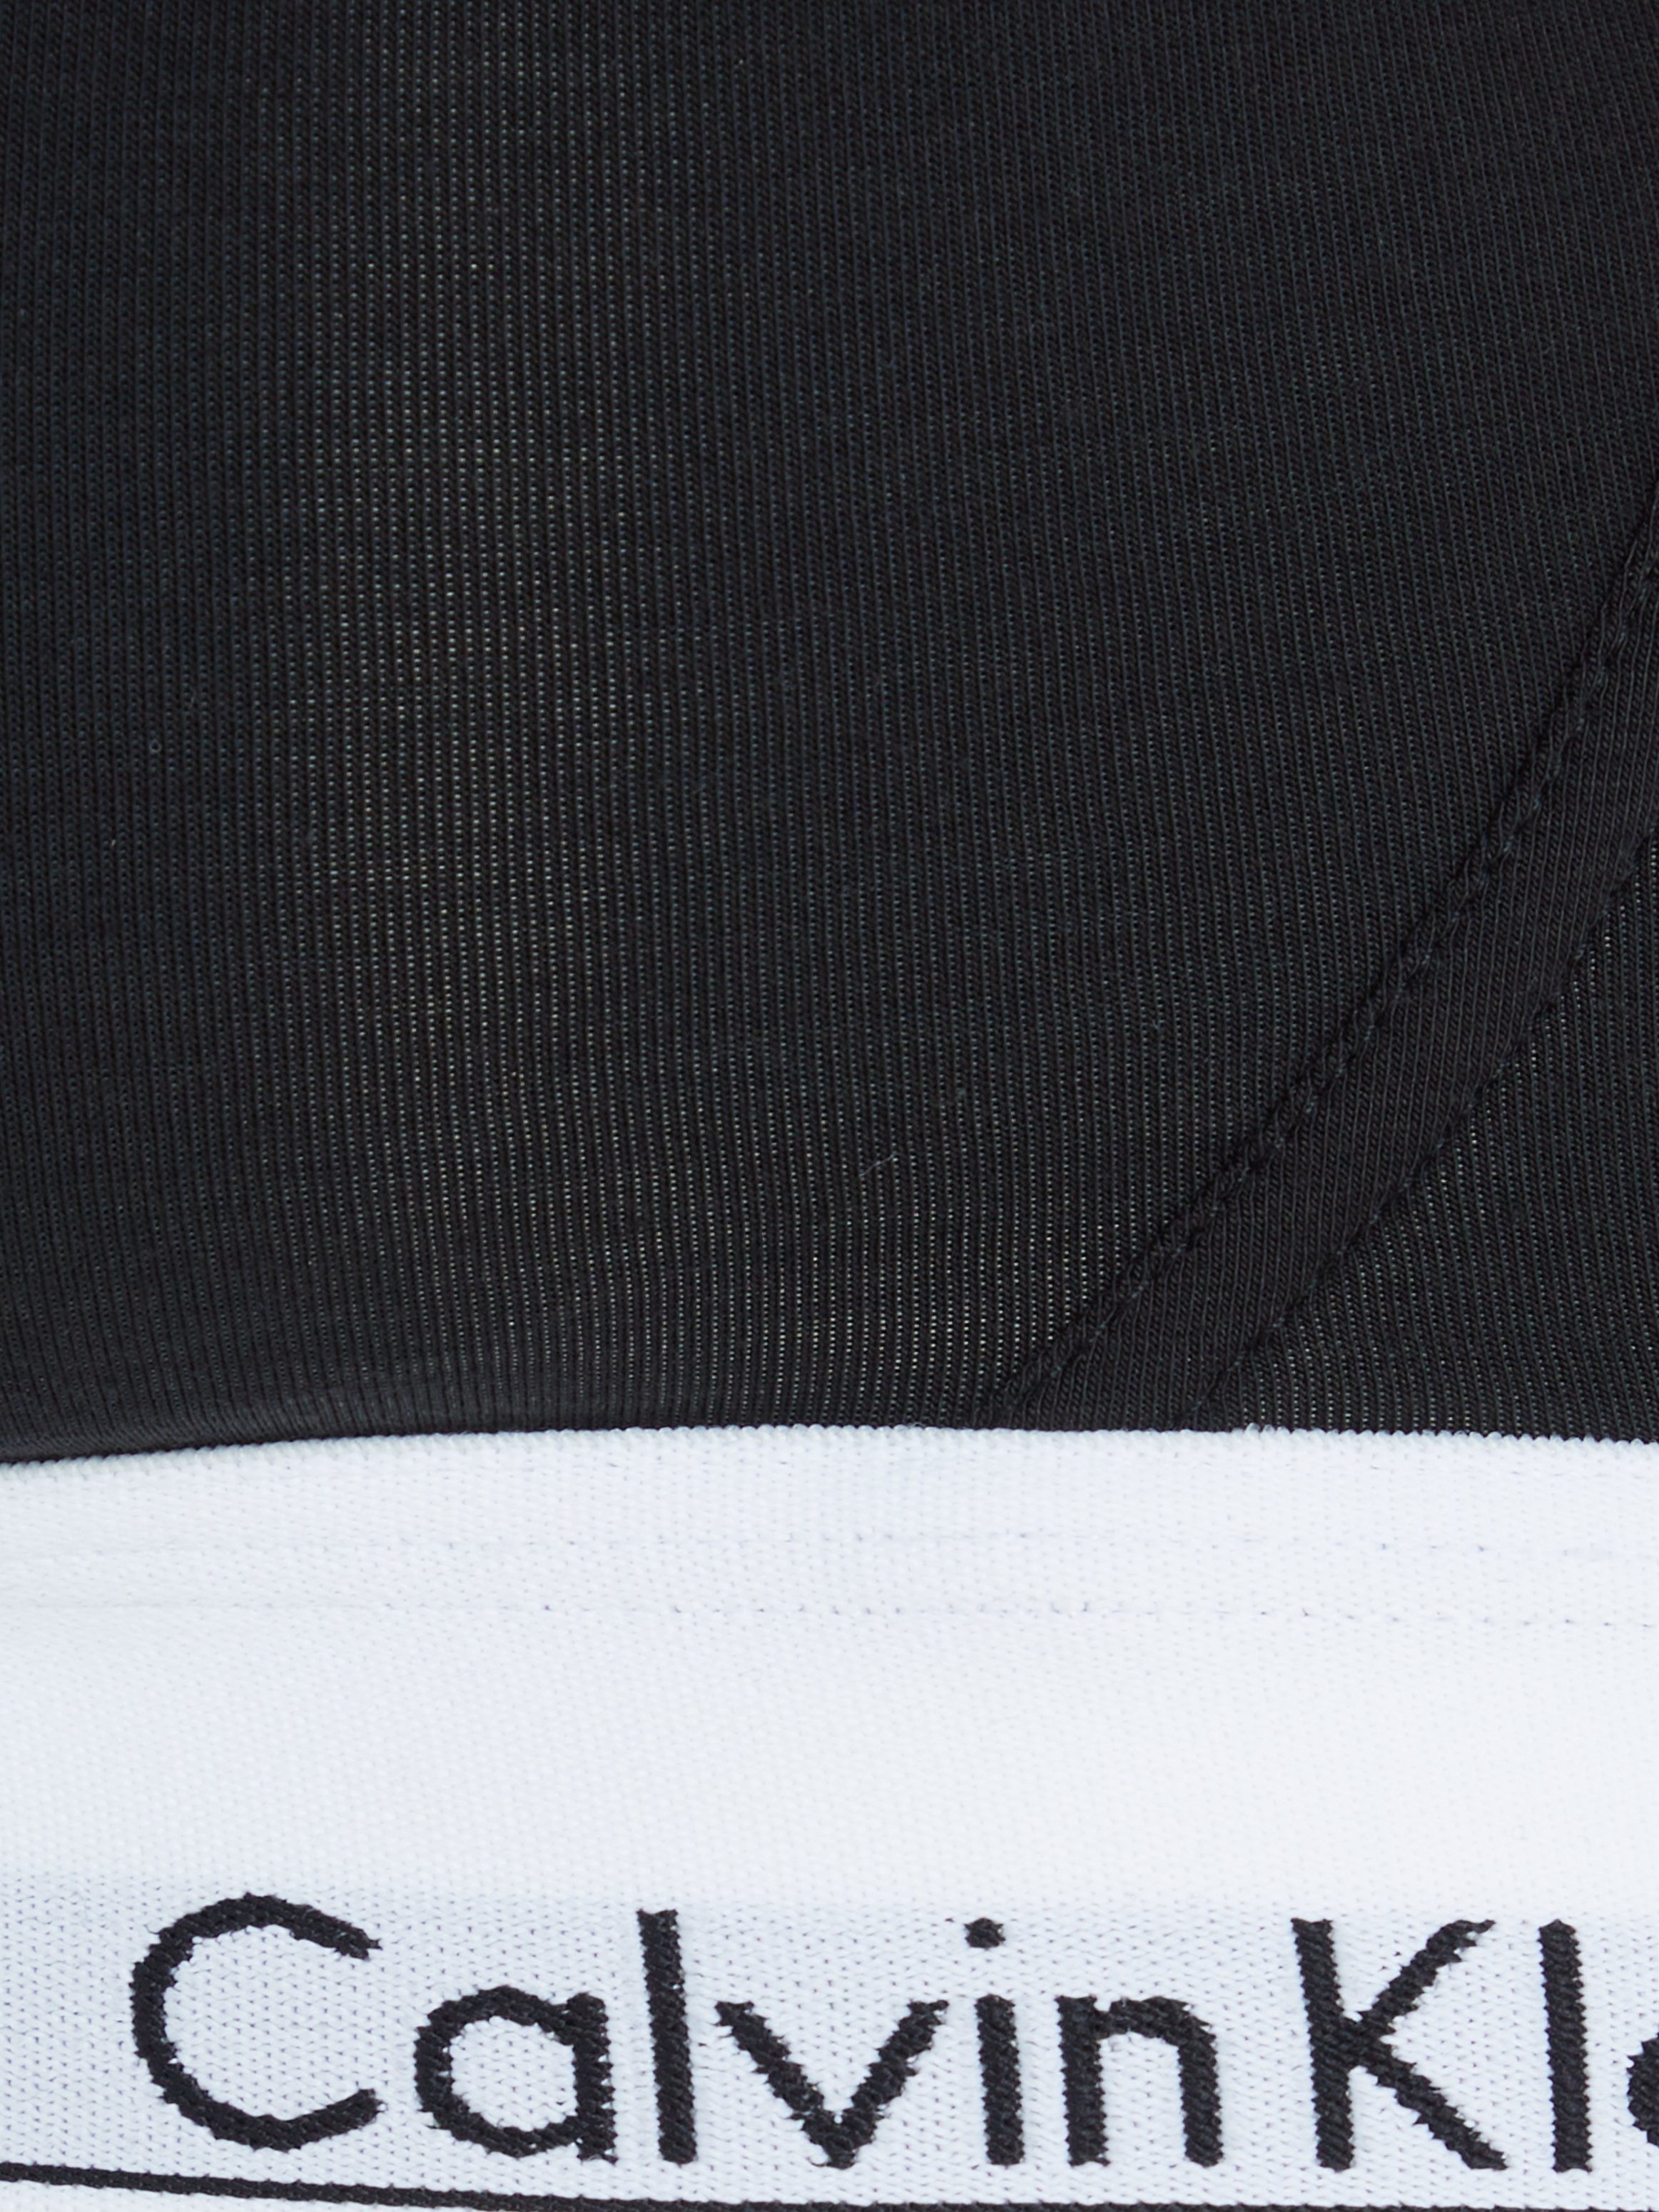 mit schwarz Still-BH Klein Underwear Unterbrustband Logo Calvin